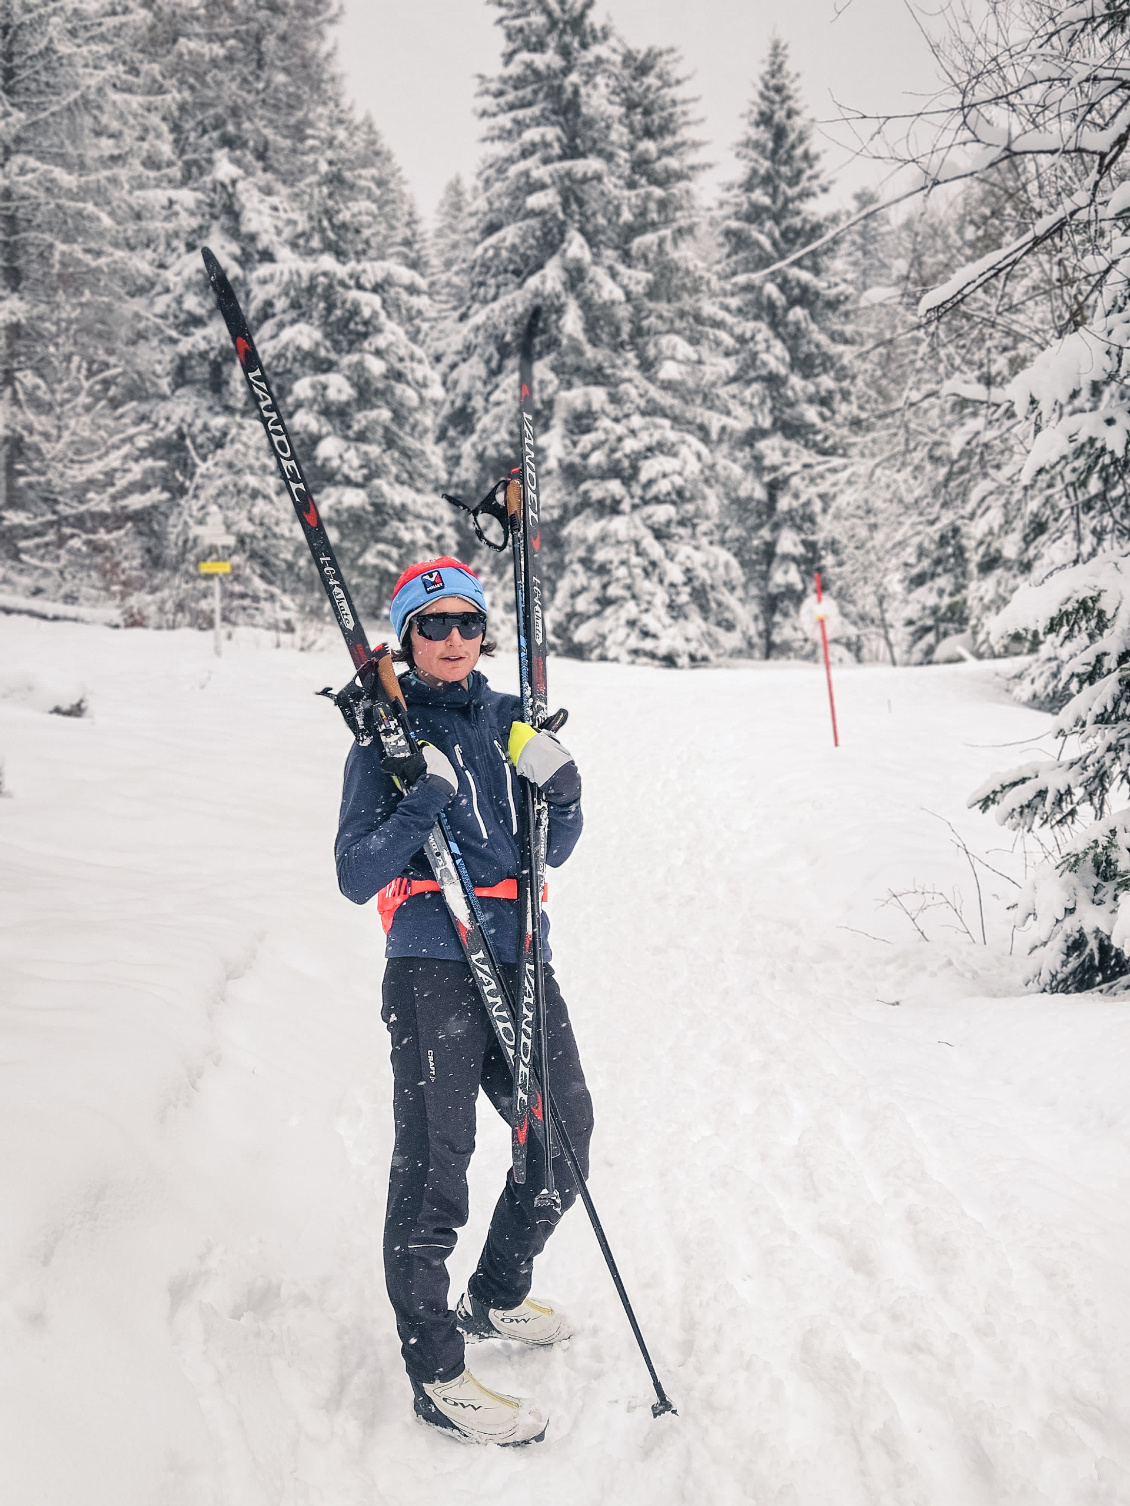 2024 : rien n’a changé !
Toujours aussi heureuse sur les skis dans le blanc Jura.